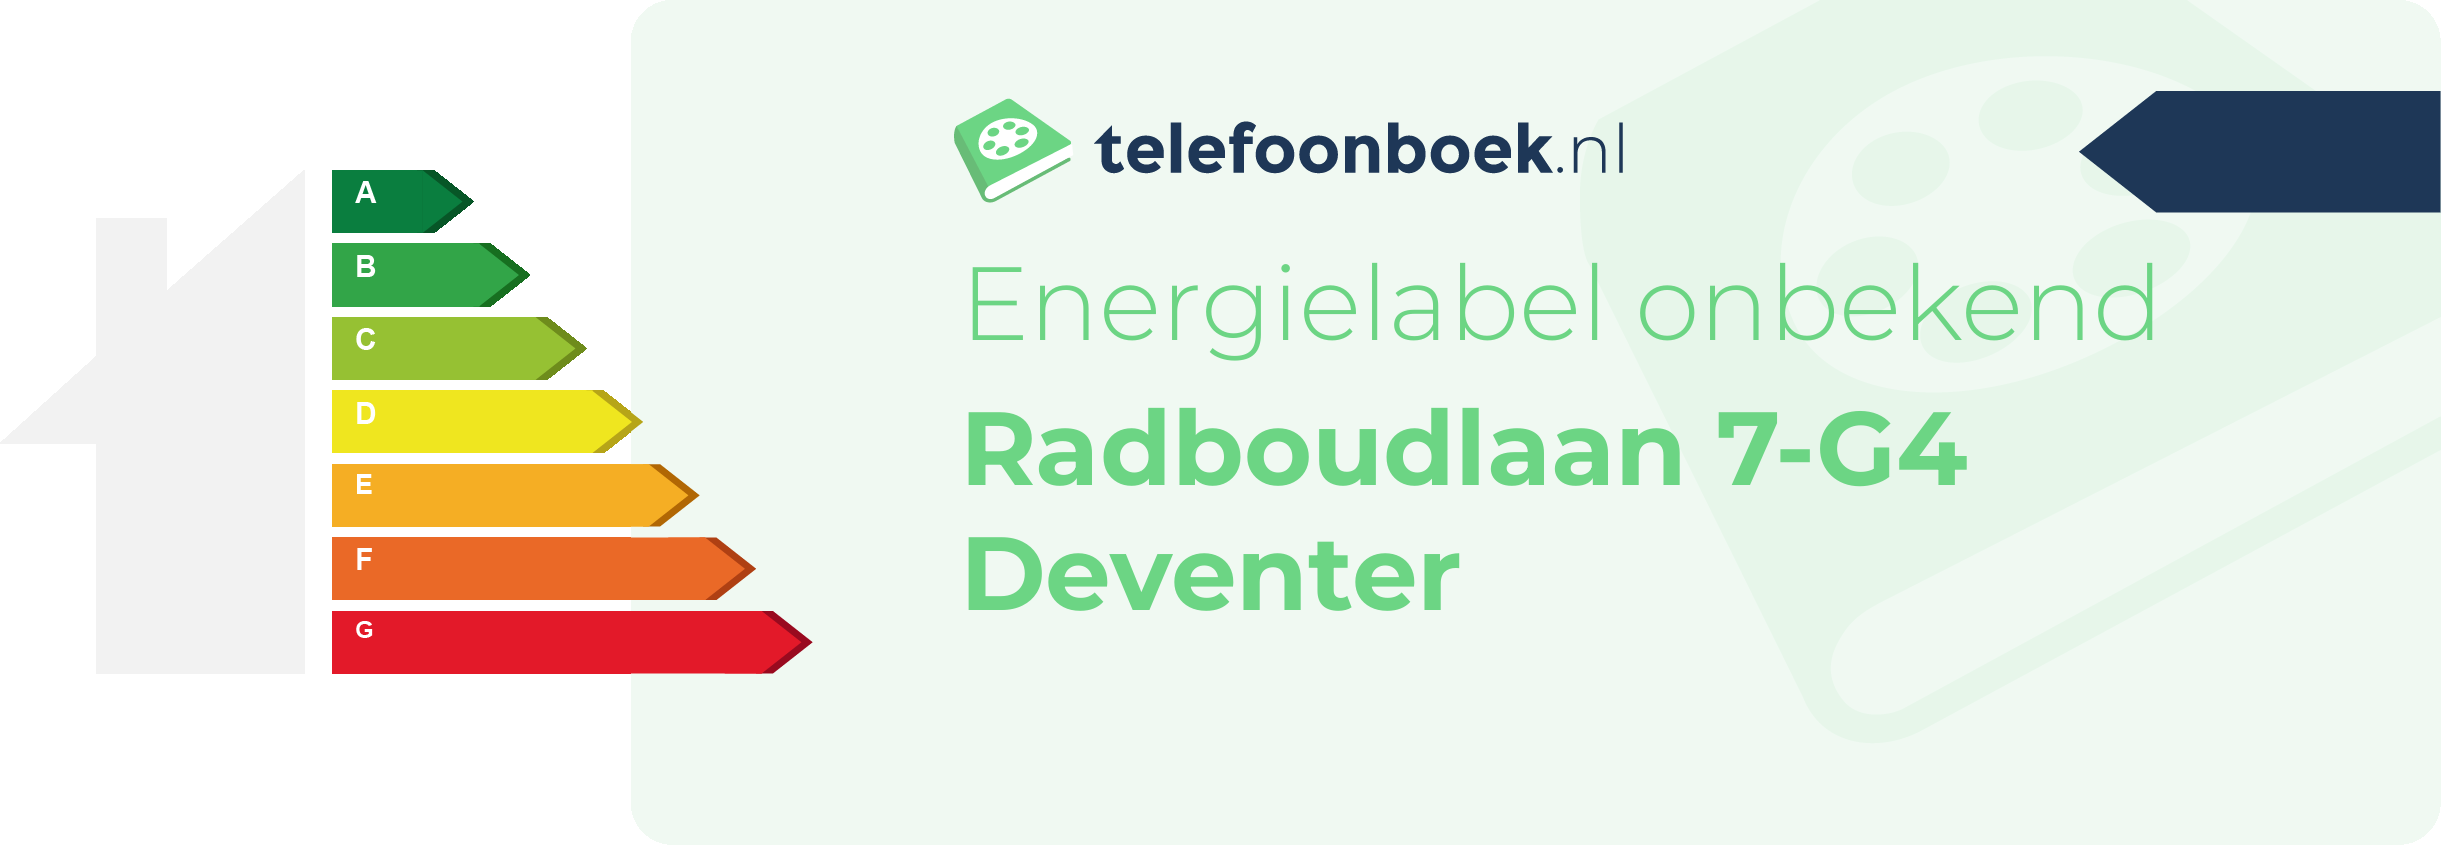 Energielabel Radboudlaan 7-G4 Deventer